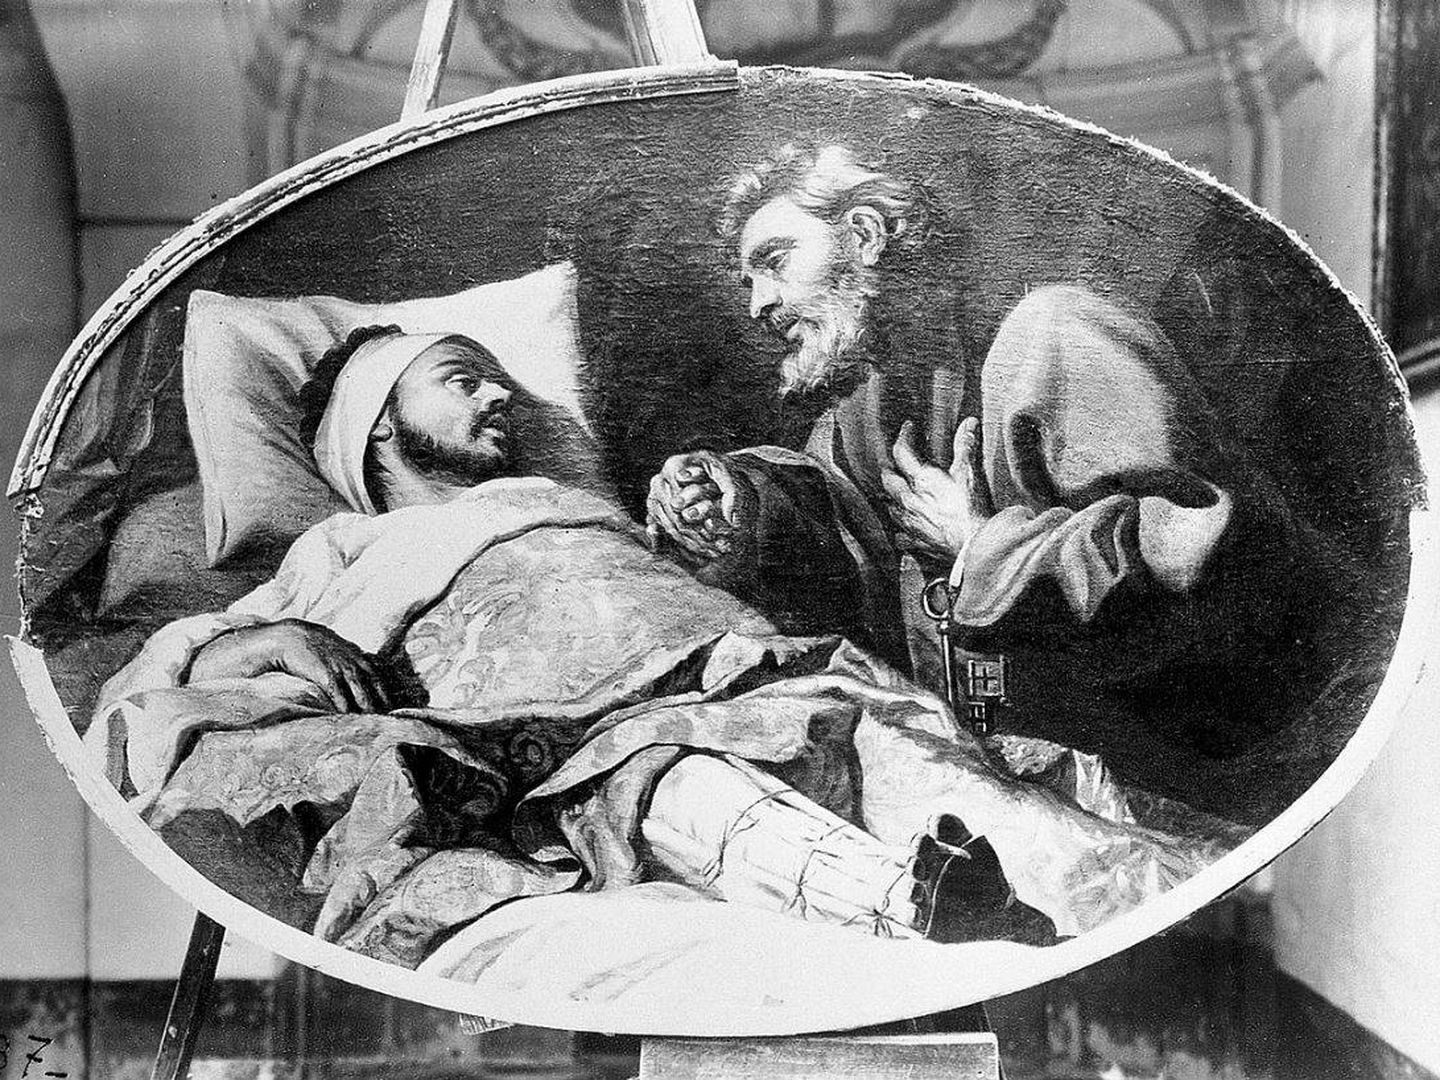 San Ignacio, convaleciente en la cama tras la operación de pierna, tiene una visión de San Pedro; obra de Antoine de Fauvrey expuesta en La Curia del Arzobispo, Malta. (C.C.)